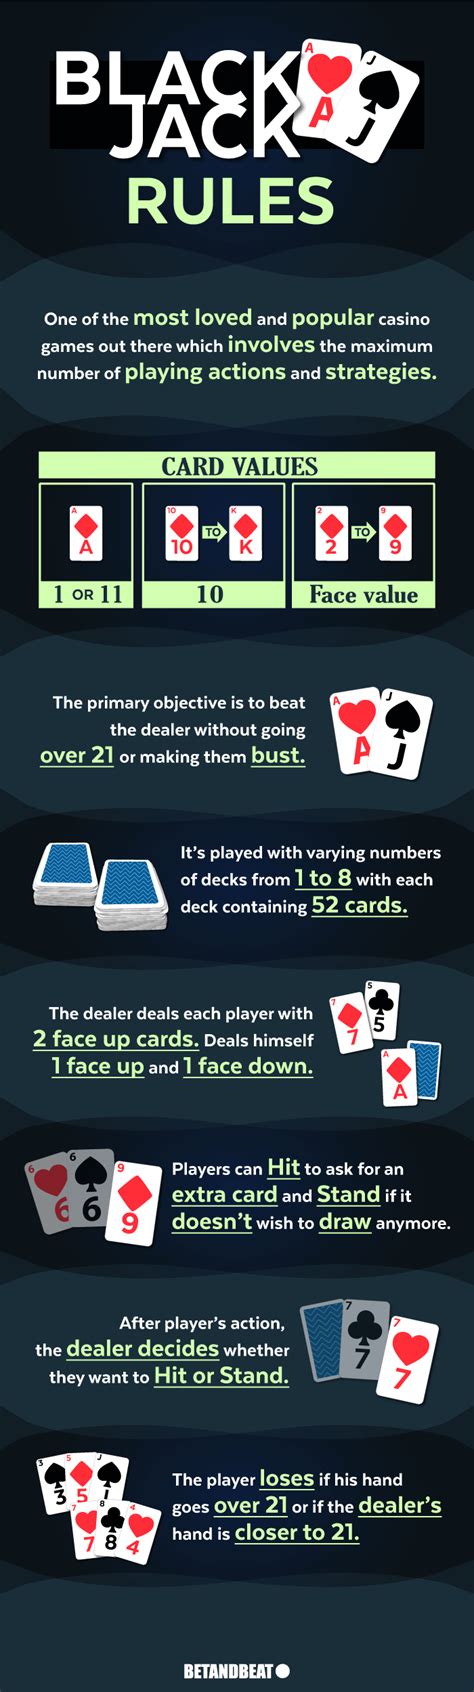 blackjack rules deck of cards fzau